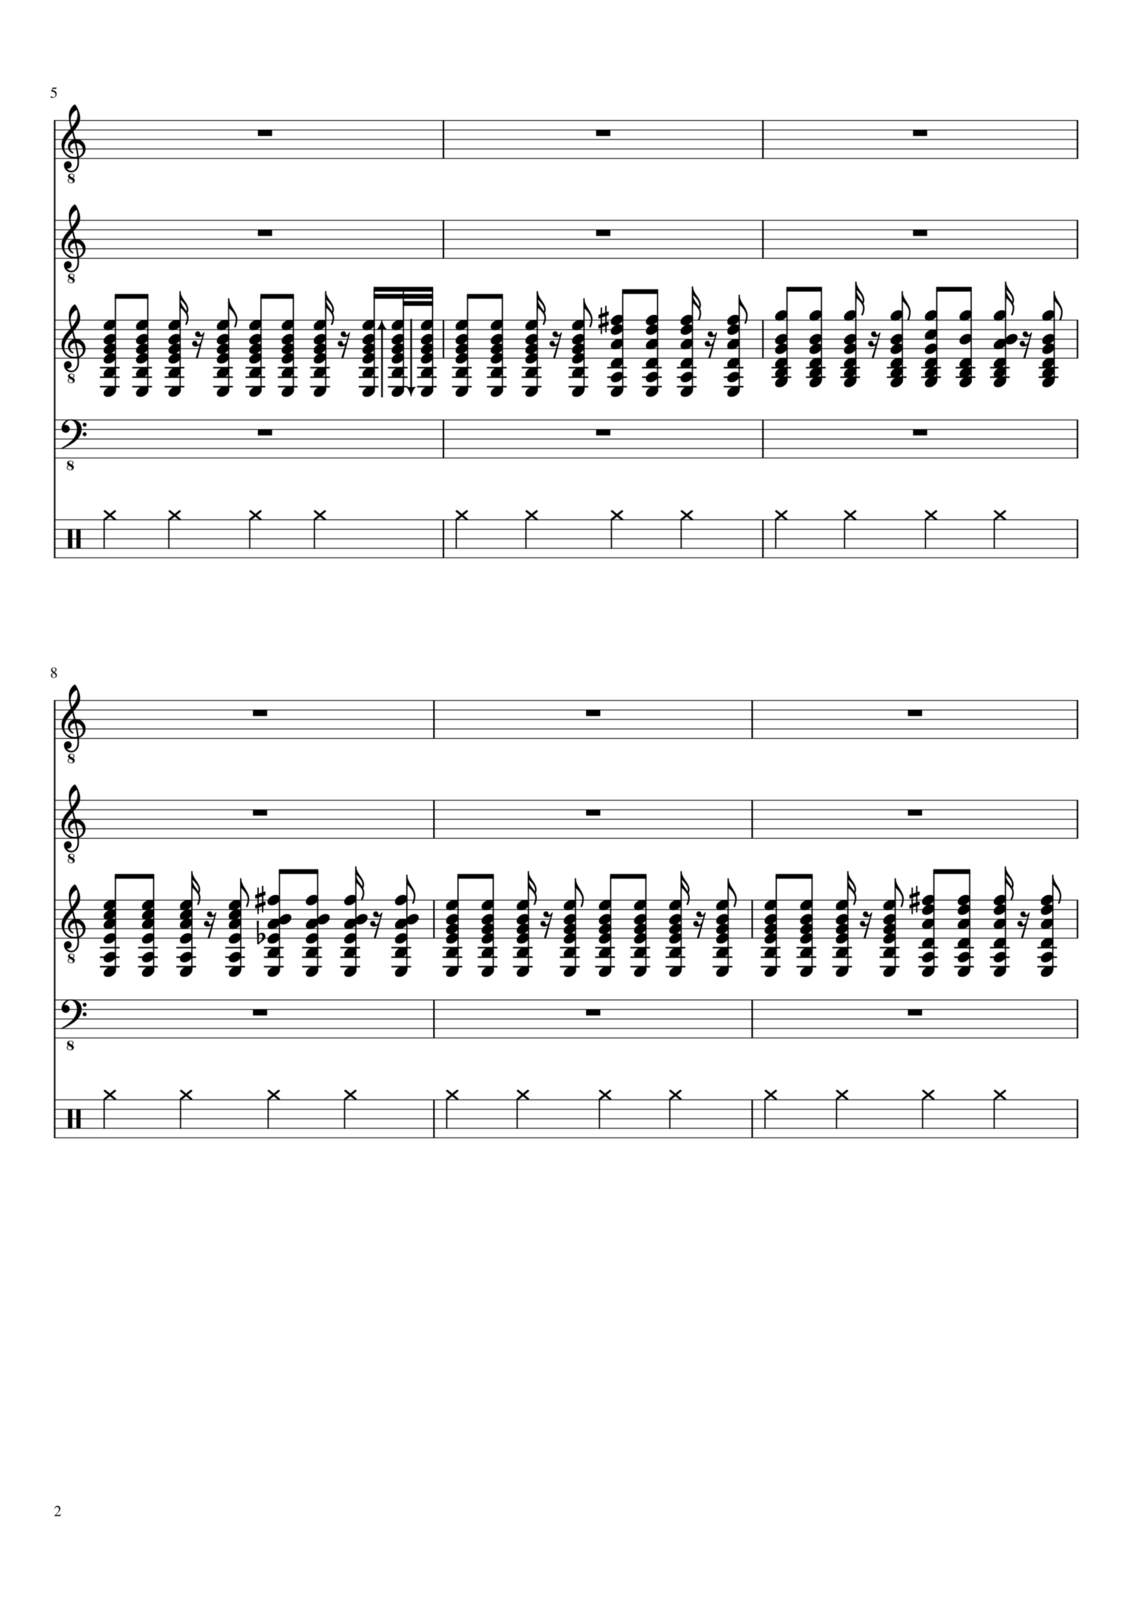 Vechnaya molodost slide, Image 2